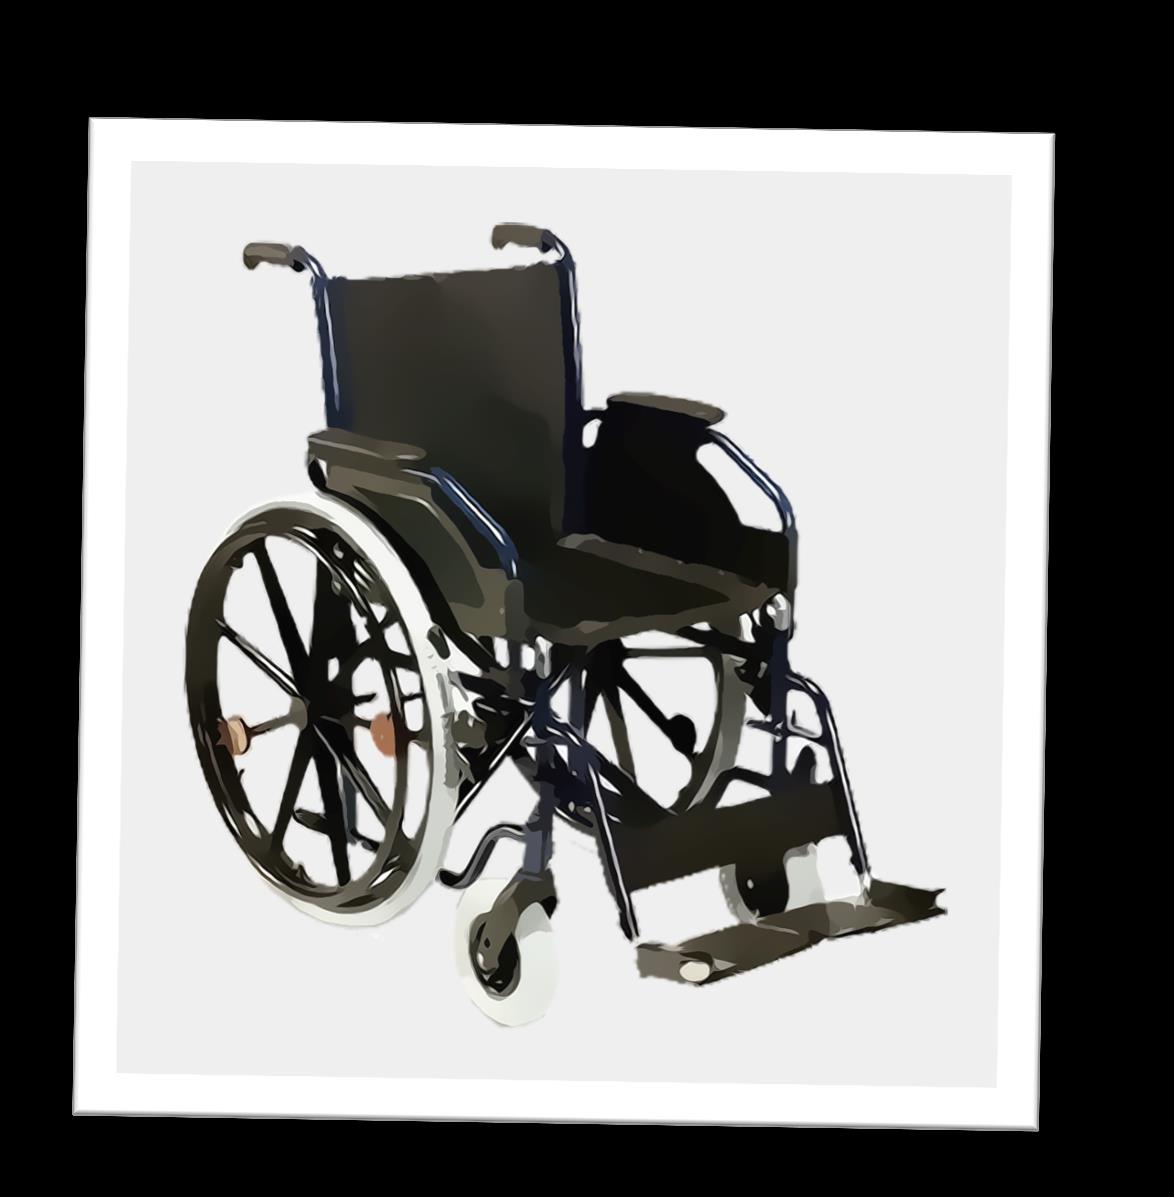 MASZYNY, NARZĘDZIA, MATERIAŁY Wózek inwalidzki służy